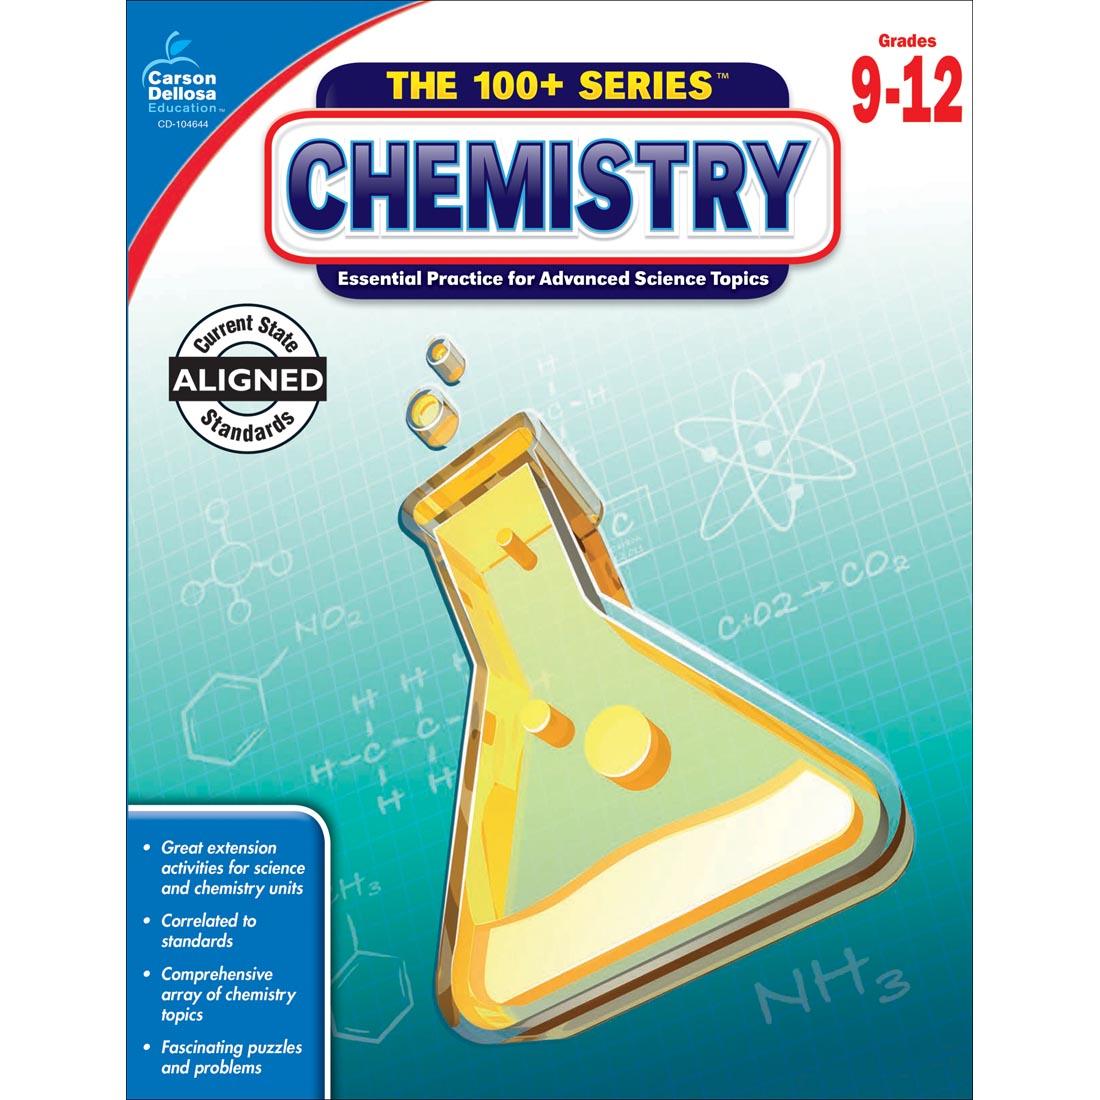 The 100+ Series: Chemistry by Carson Dellosa Grades 9-12